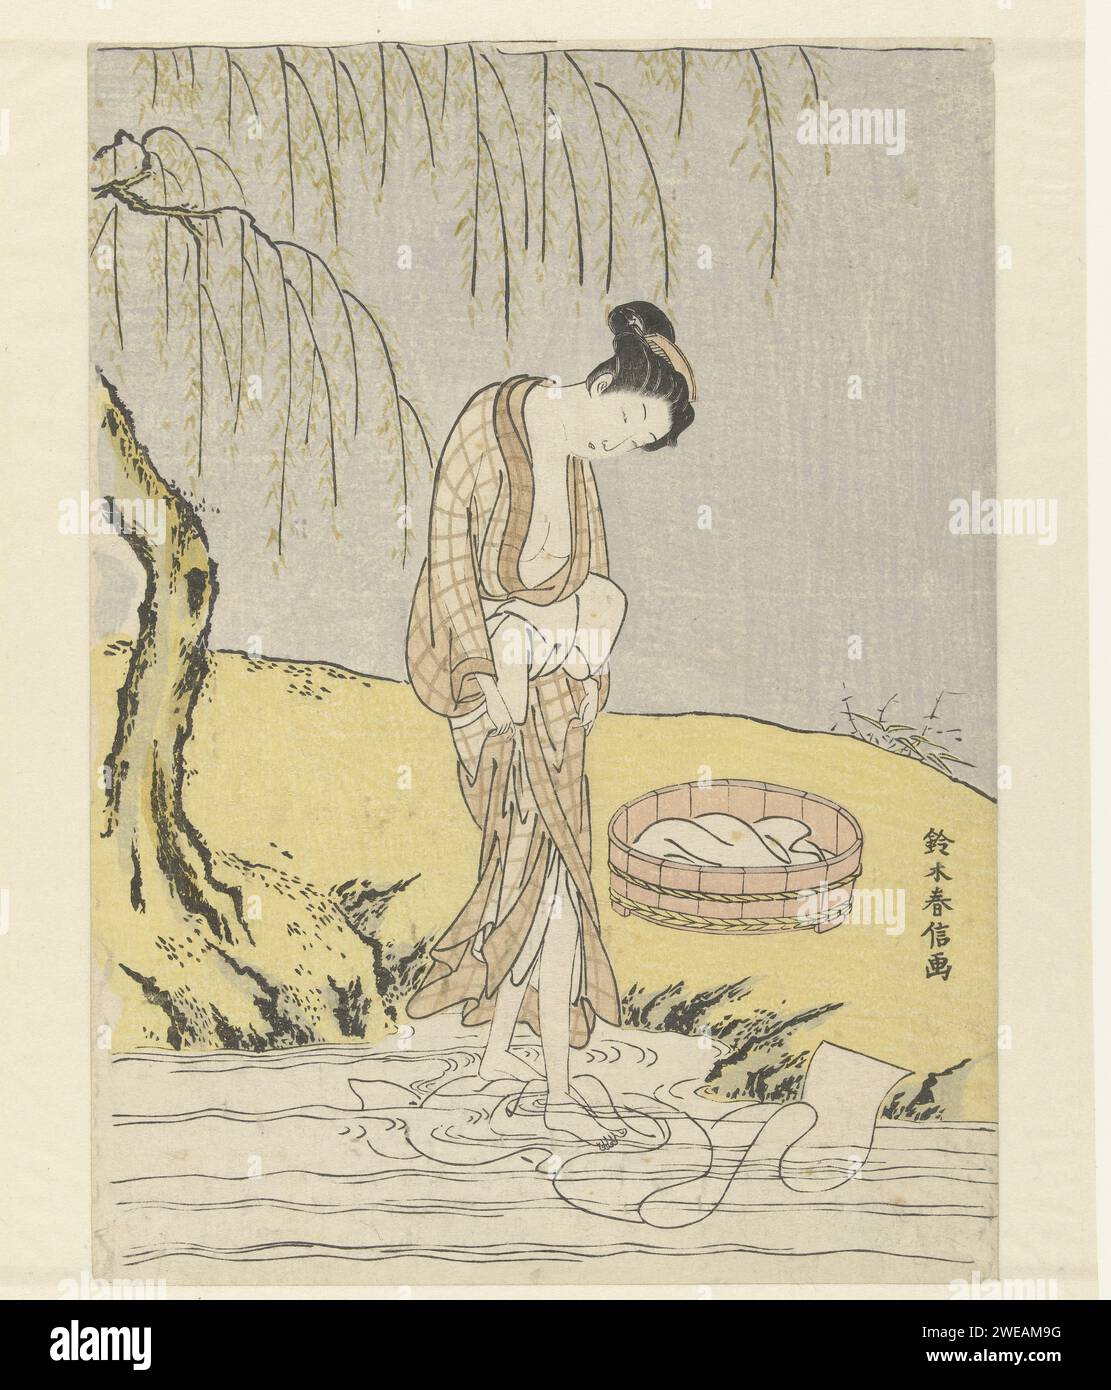 Ropa esposa, Suzuki Harunobu, 1765 - 1770 imprimir Mujer en Kimono aireado, de pie en río poco profundo, con los pies de la ropa encerándose; en el banco un tobe con ropa y un sauce de luto. Japón papel color madera lavado. río. árboles: willow Foto de stock